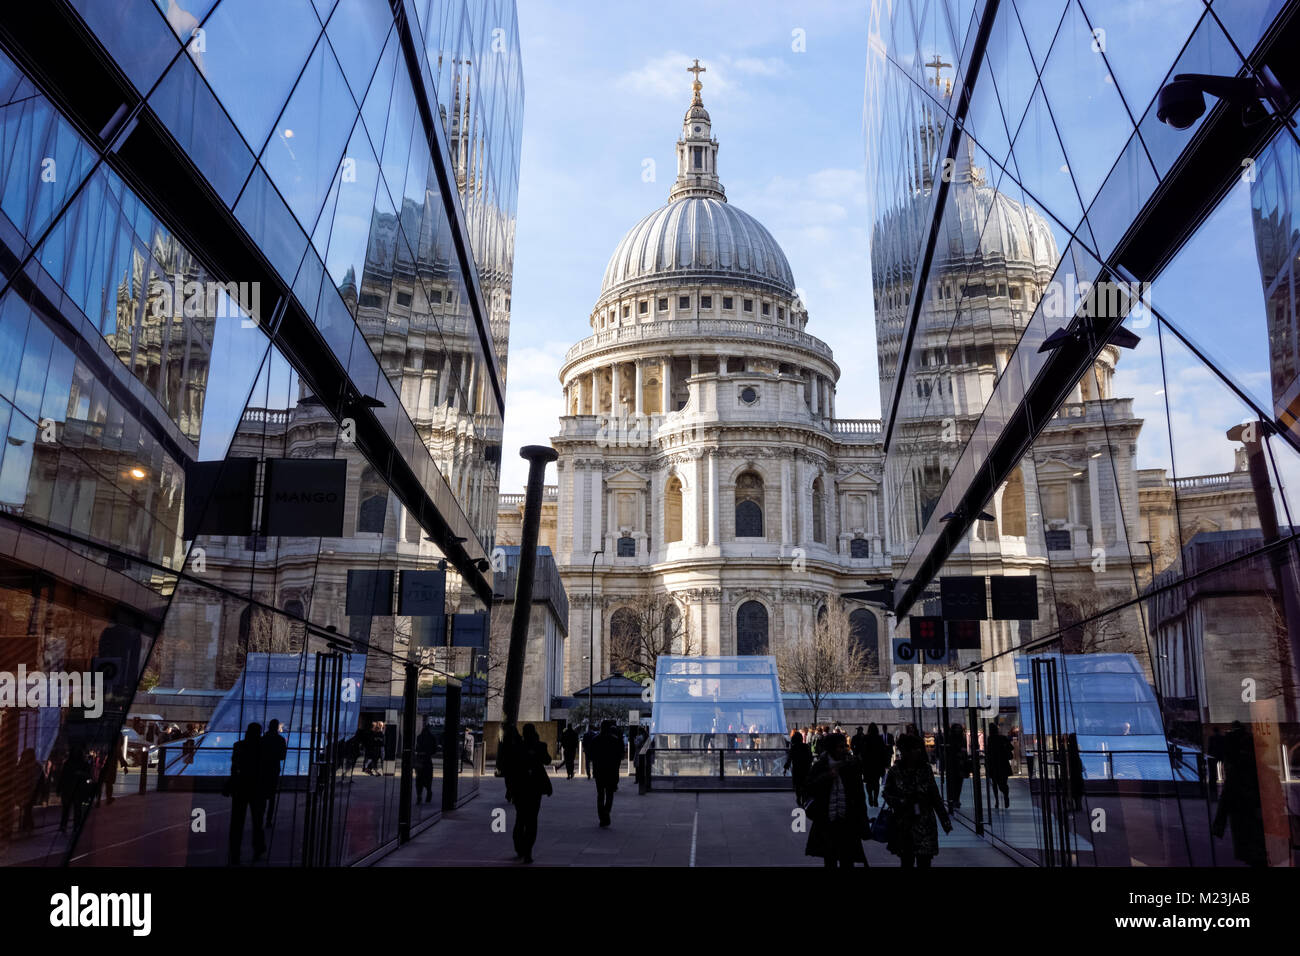 Cathédrale Saint-Paul vue de One New change à Londres Angleterre Royaume-Uni Banque D'Images